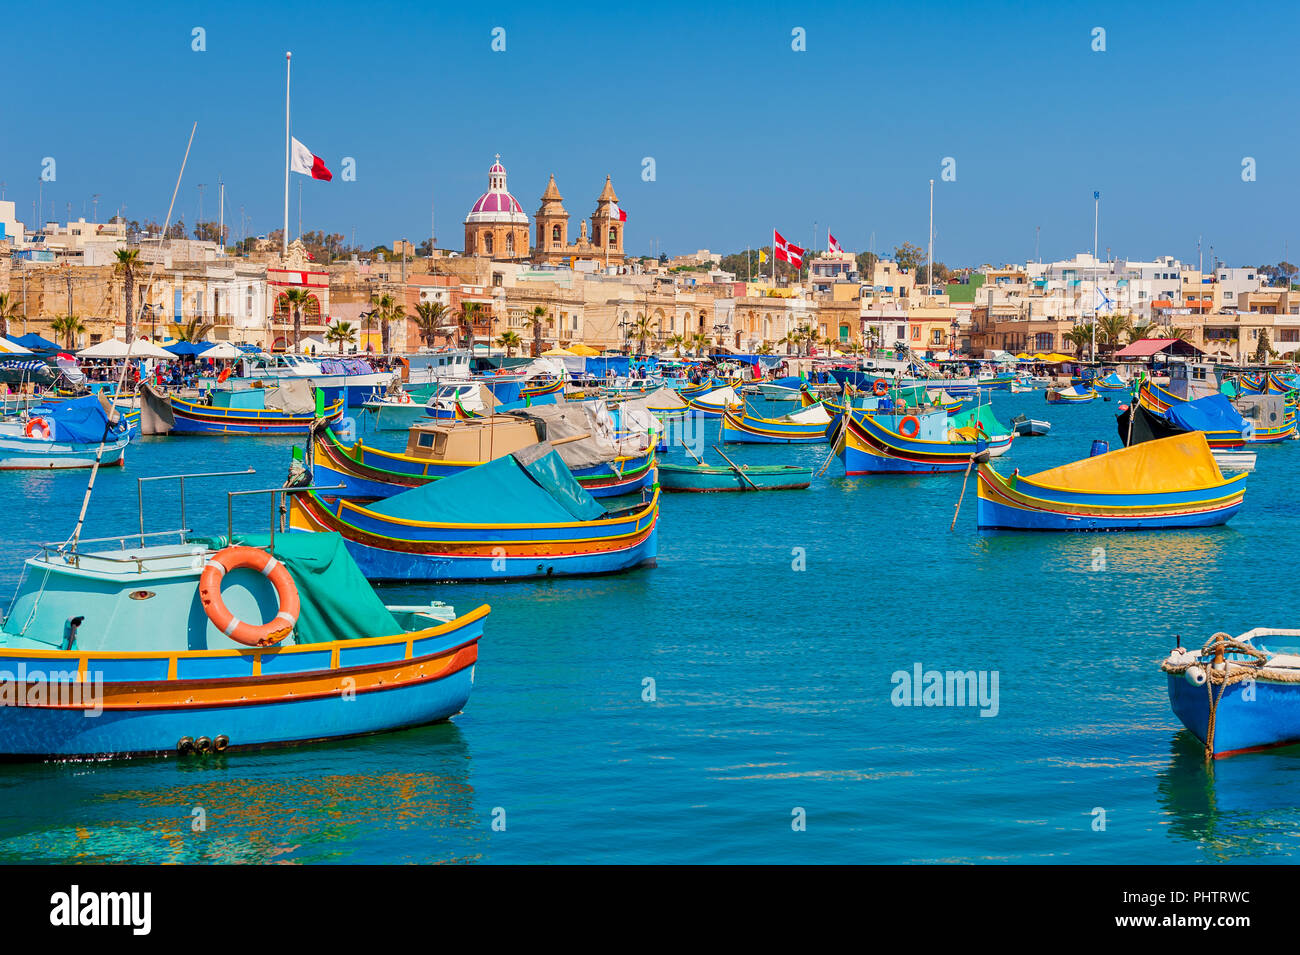 Bateaux colorés dans le port de Marsaxlokk Malte au printemps Banque D'Images